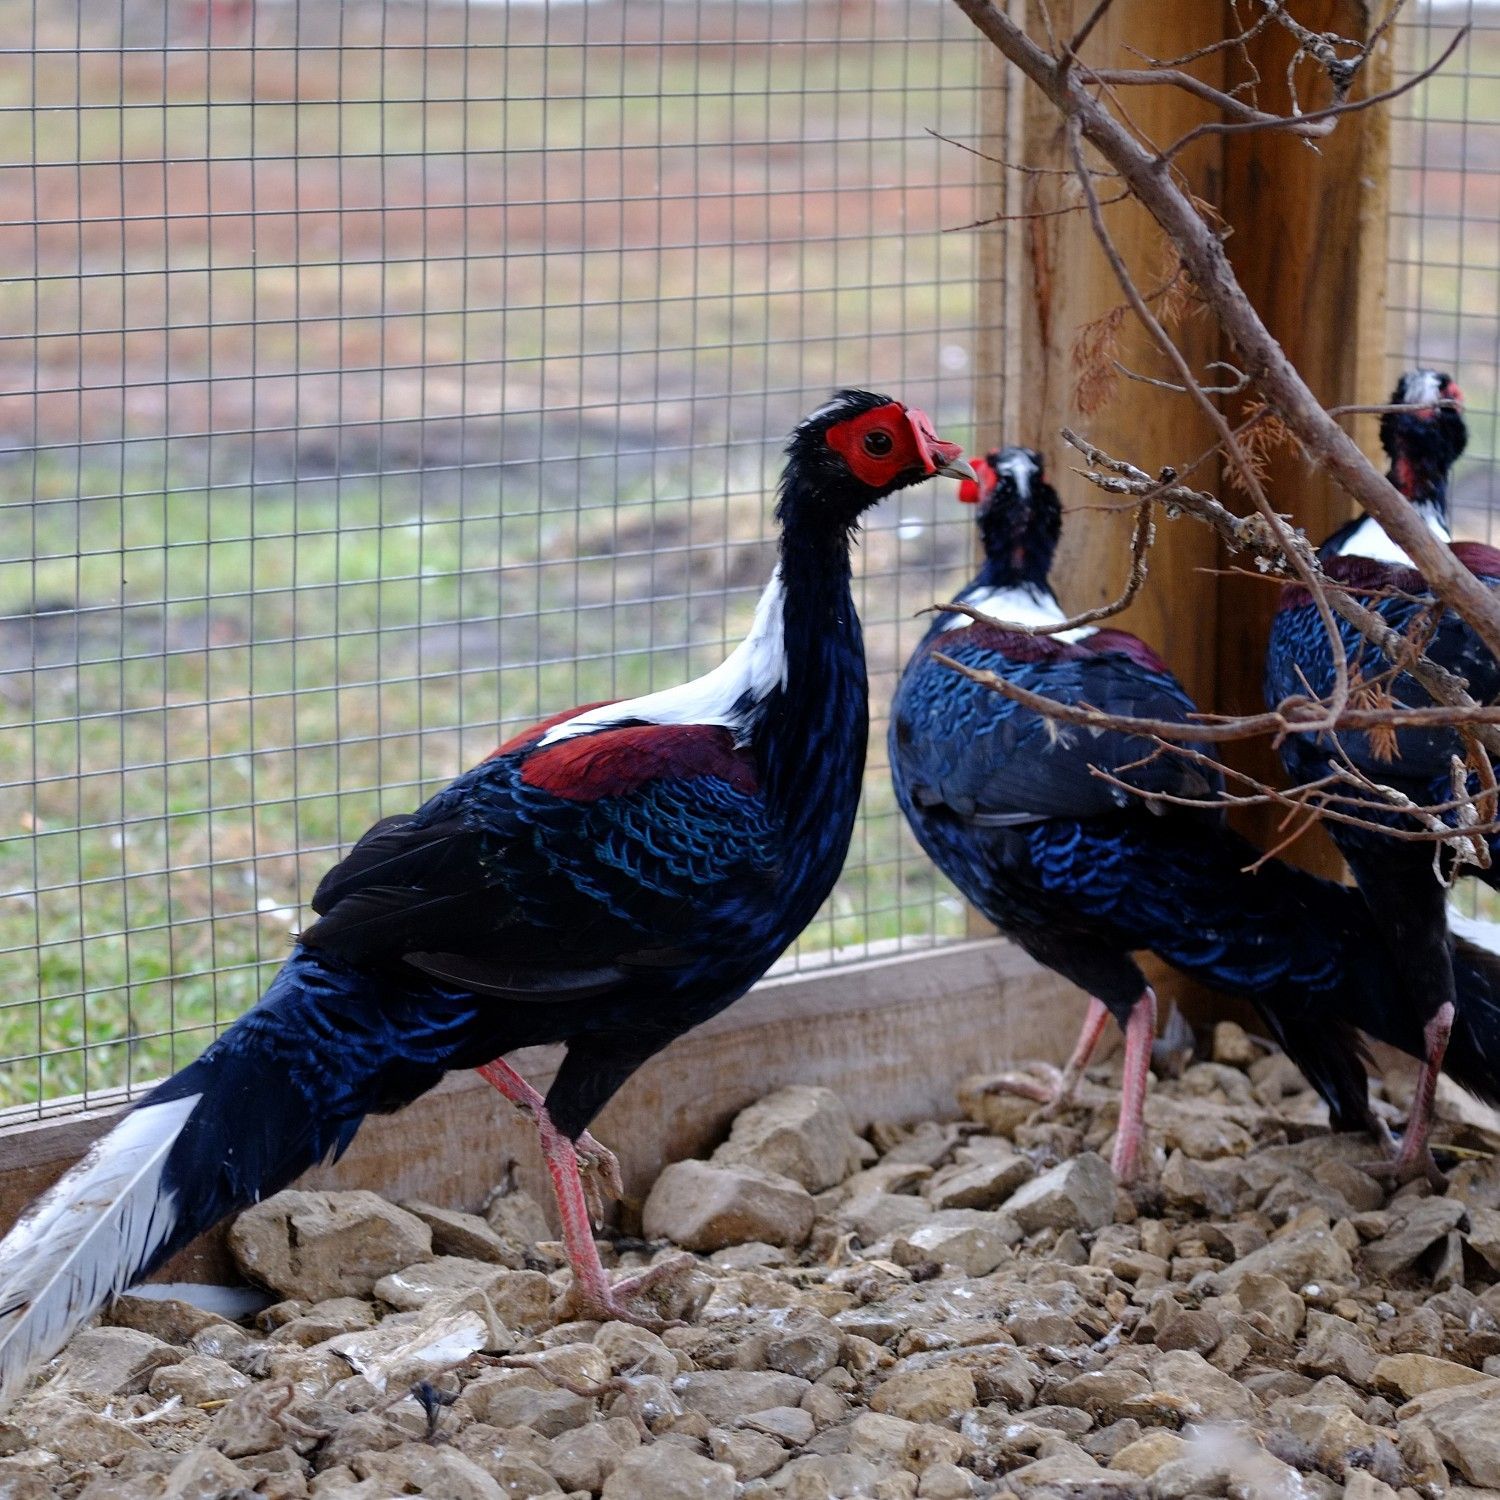 Парк птиц и животных «Епифаново Подворье» в Тульской области область - цена  билетов и часы работы зоопарка